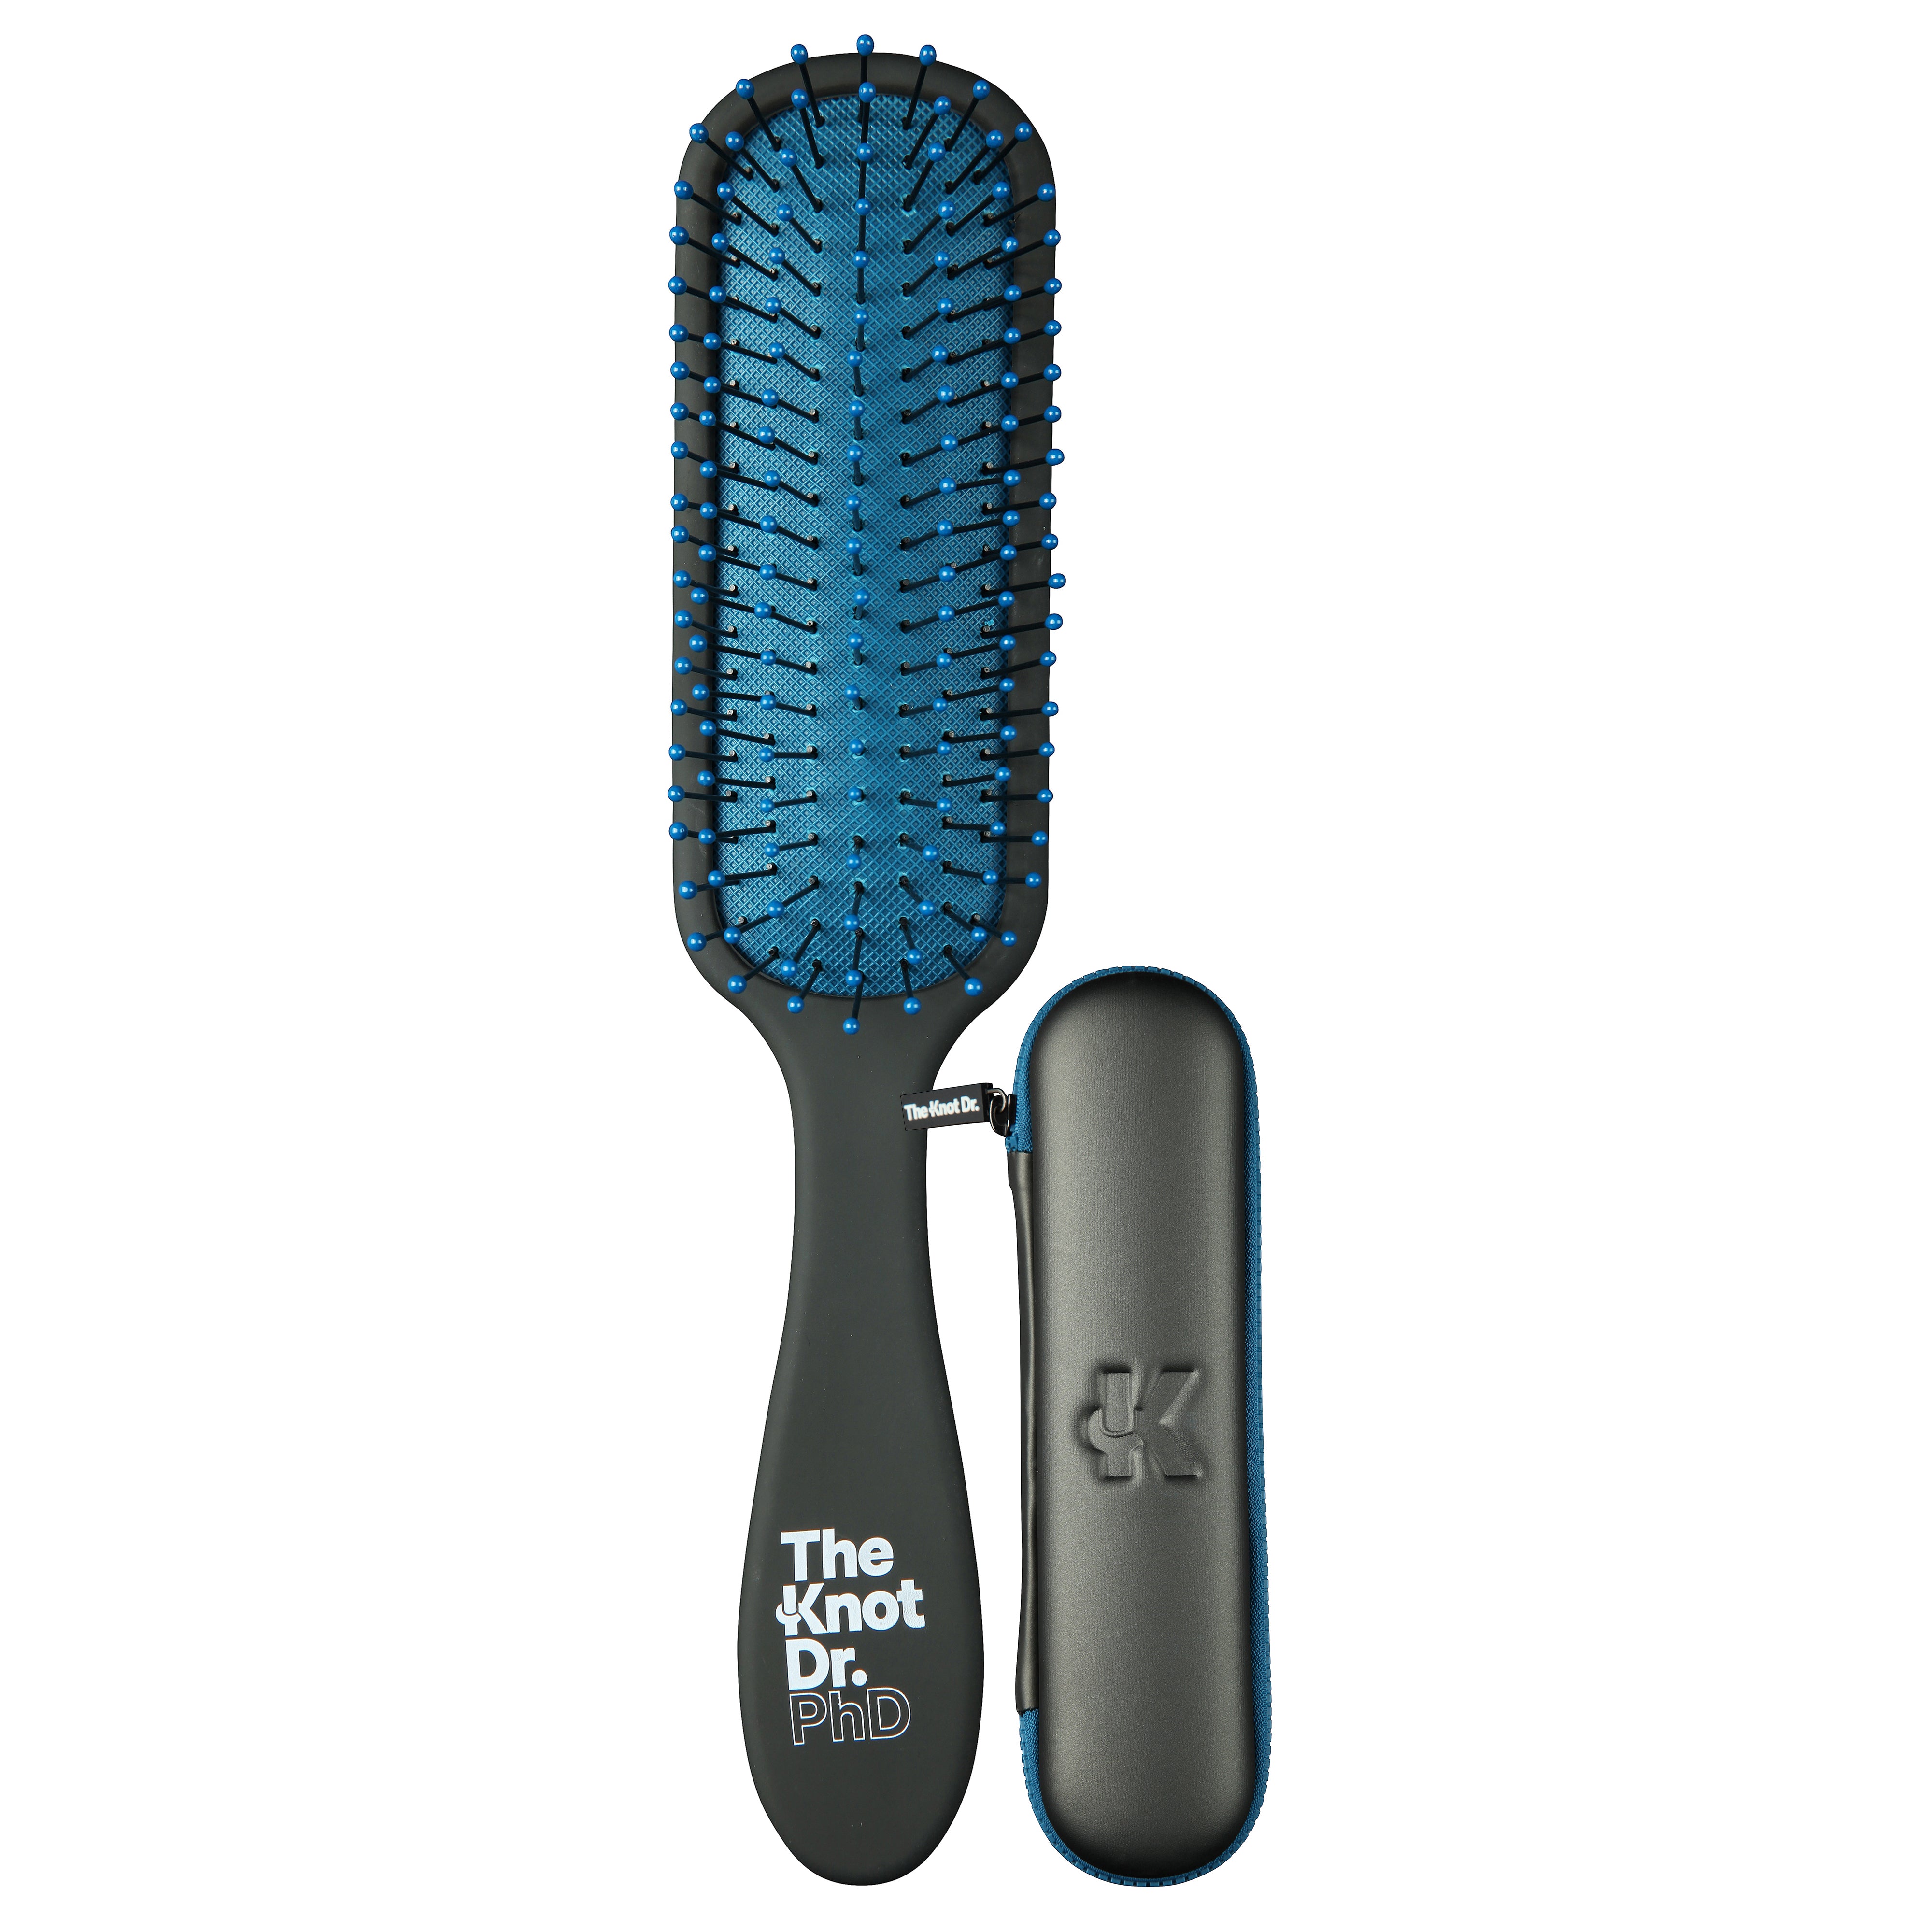 Wet Brush Detangling Hair Brush & Brush Cleaner Set